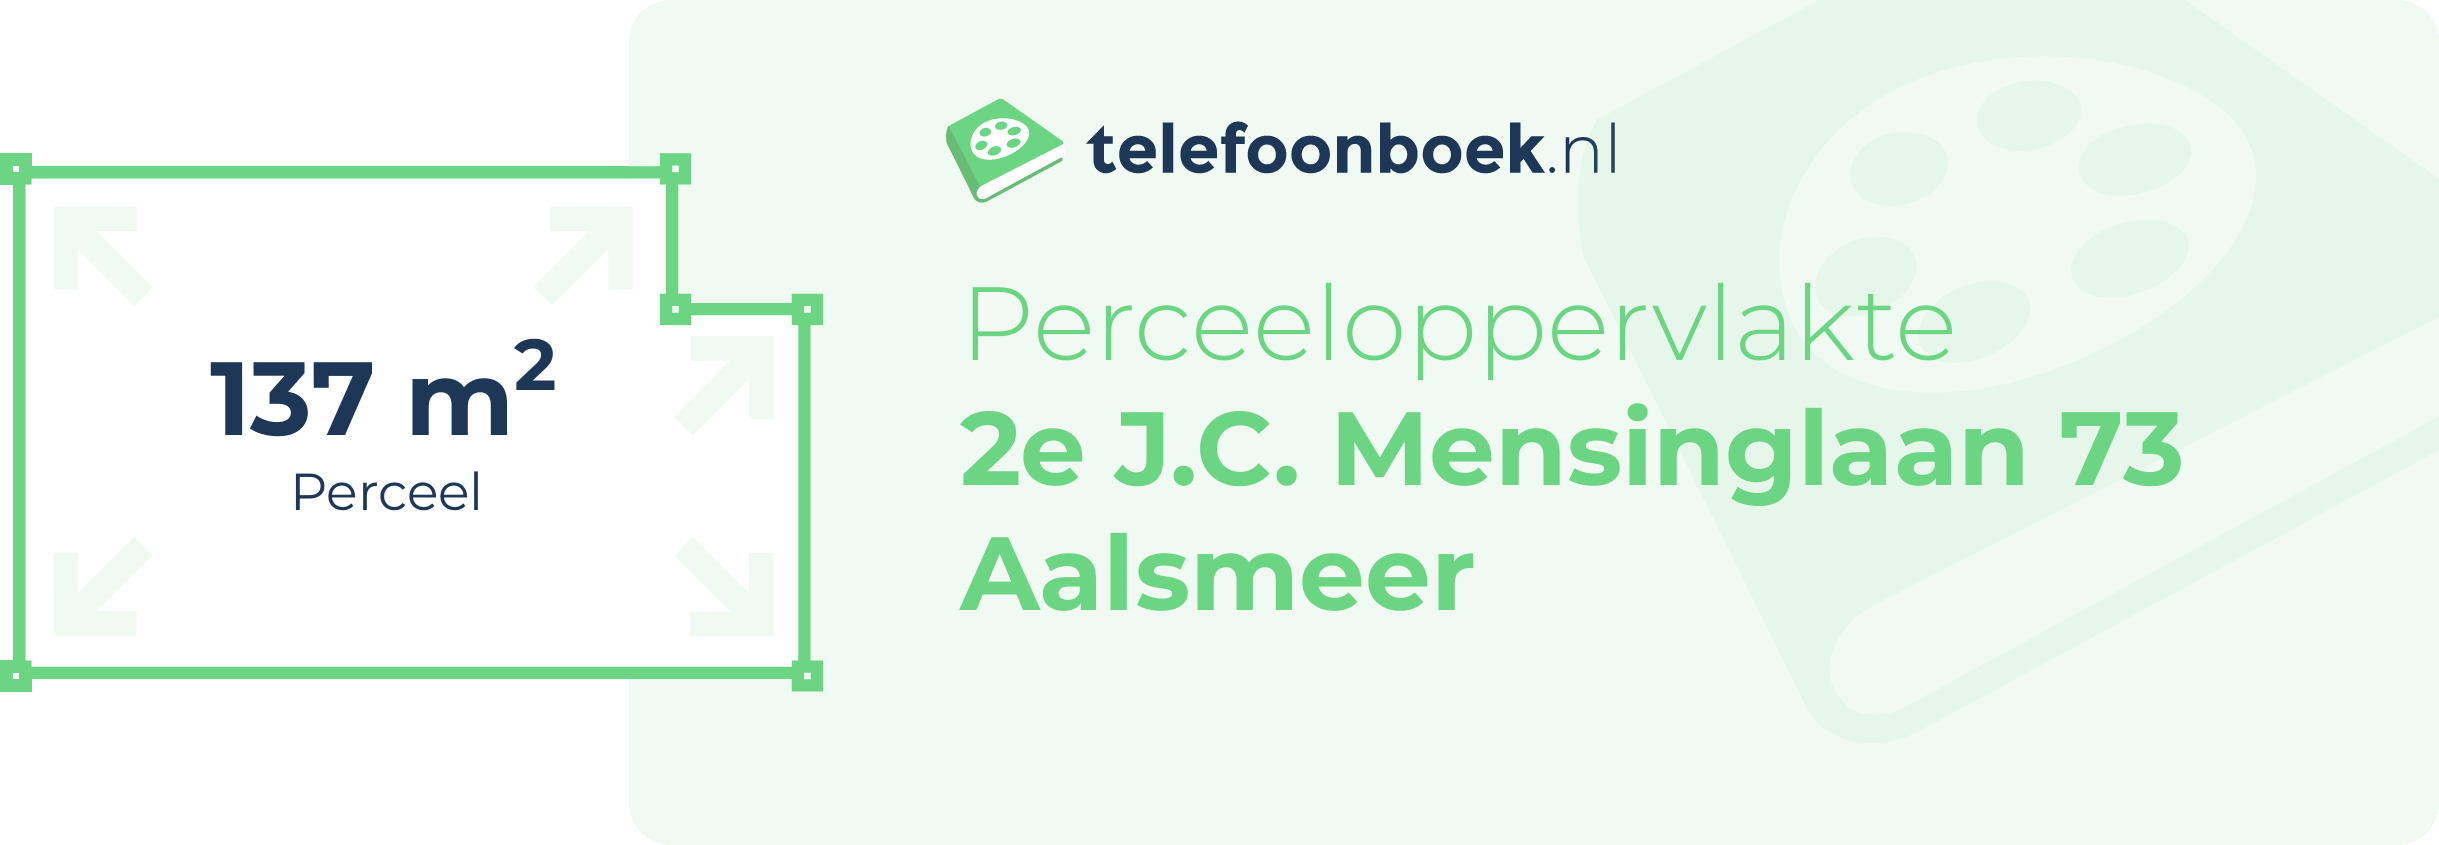 Perceeloppervlakte 2e J.C. Mensinglaan 73 Aalsmeer